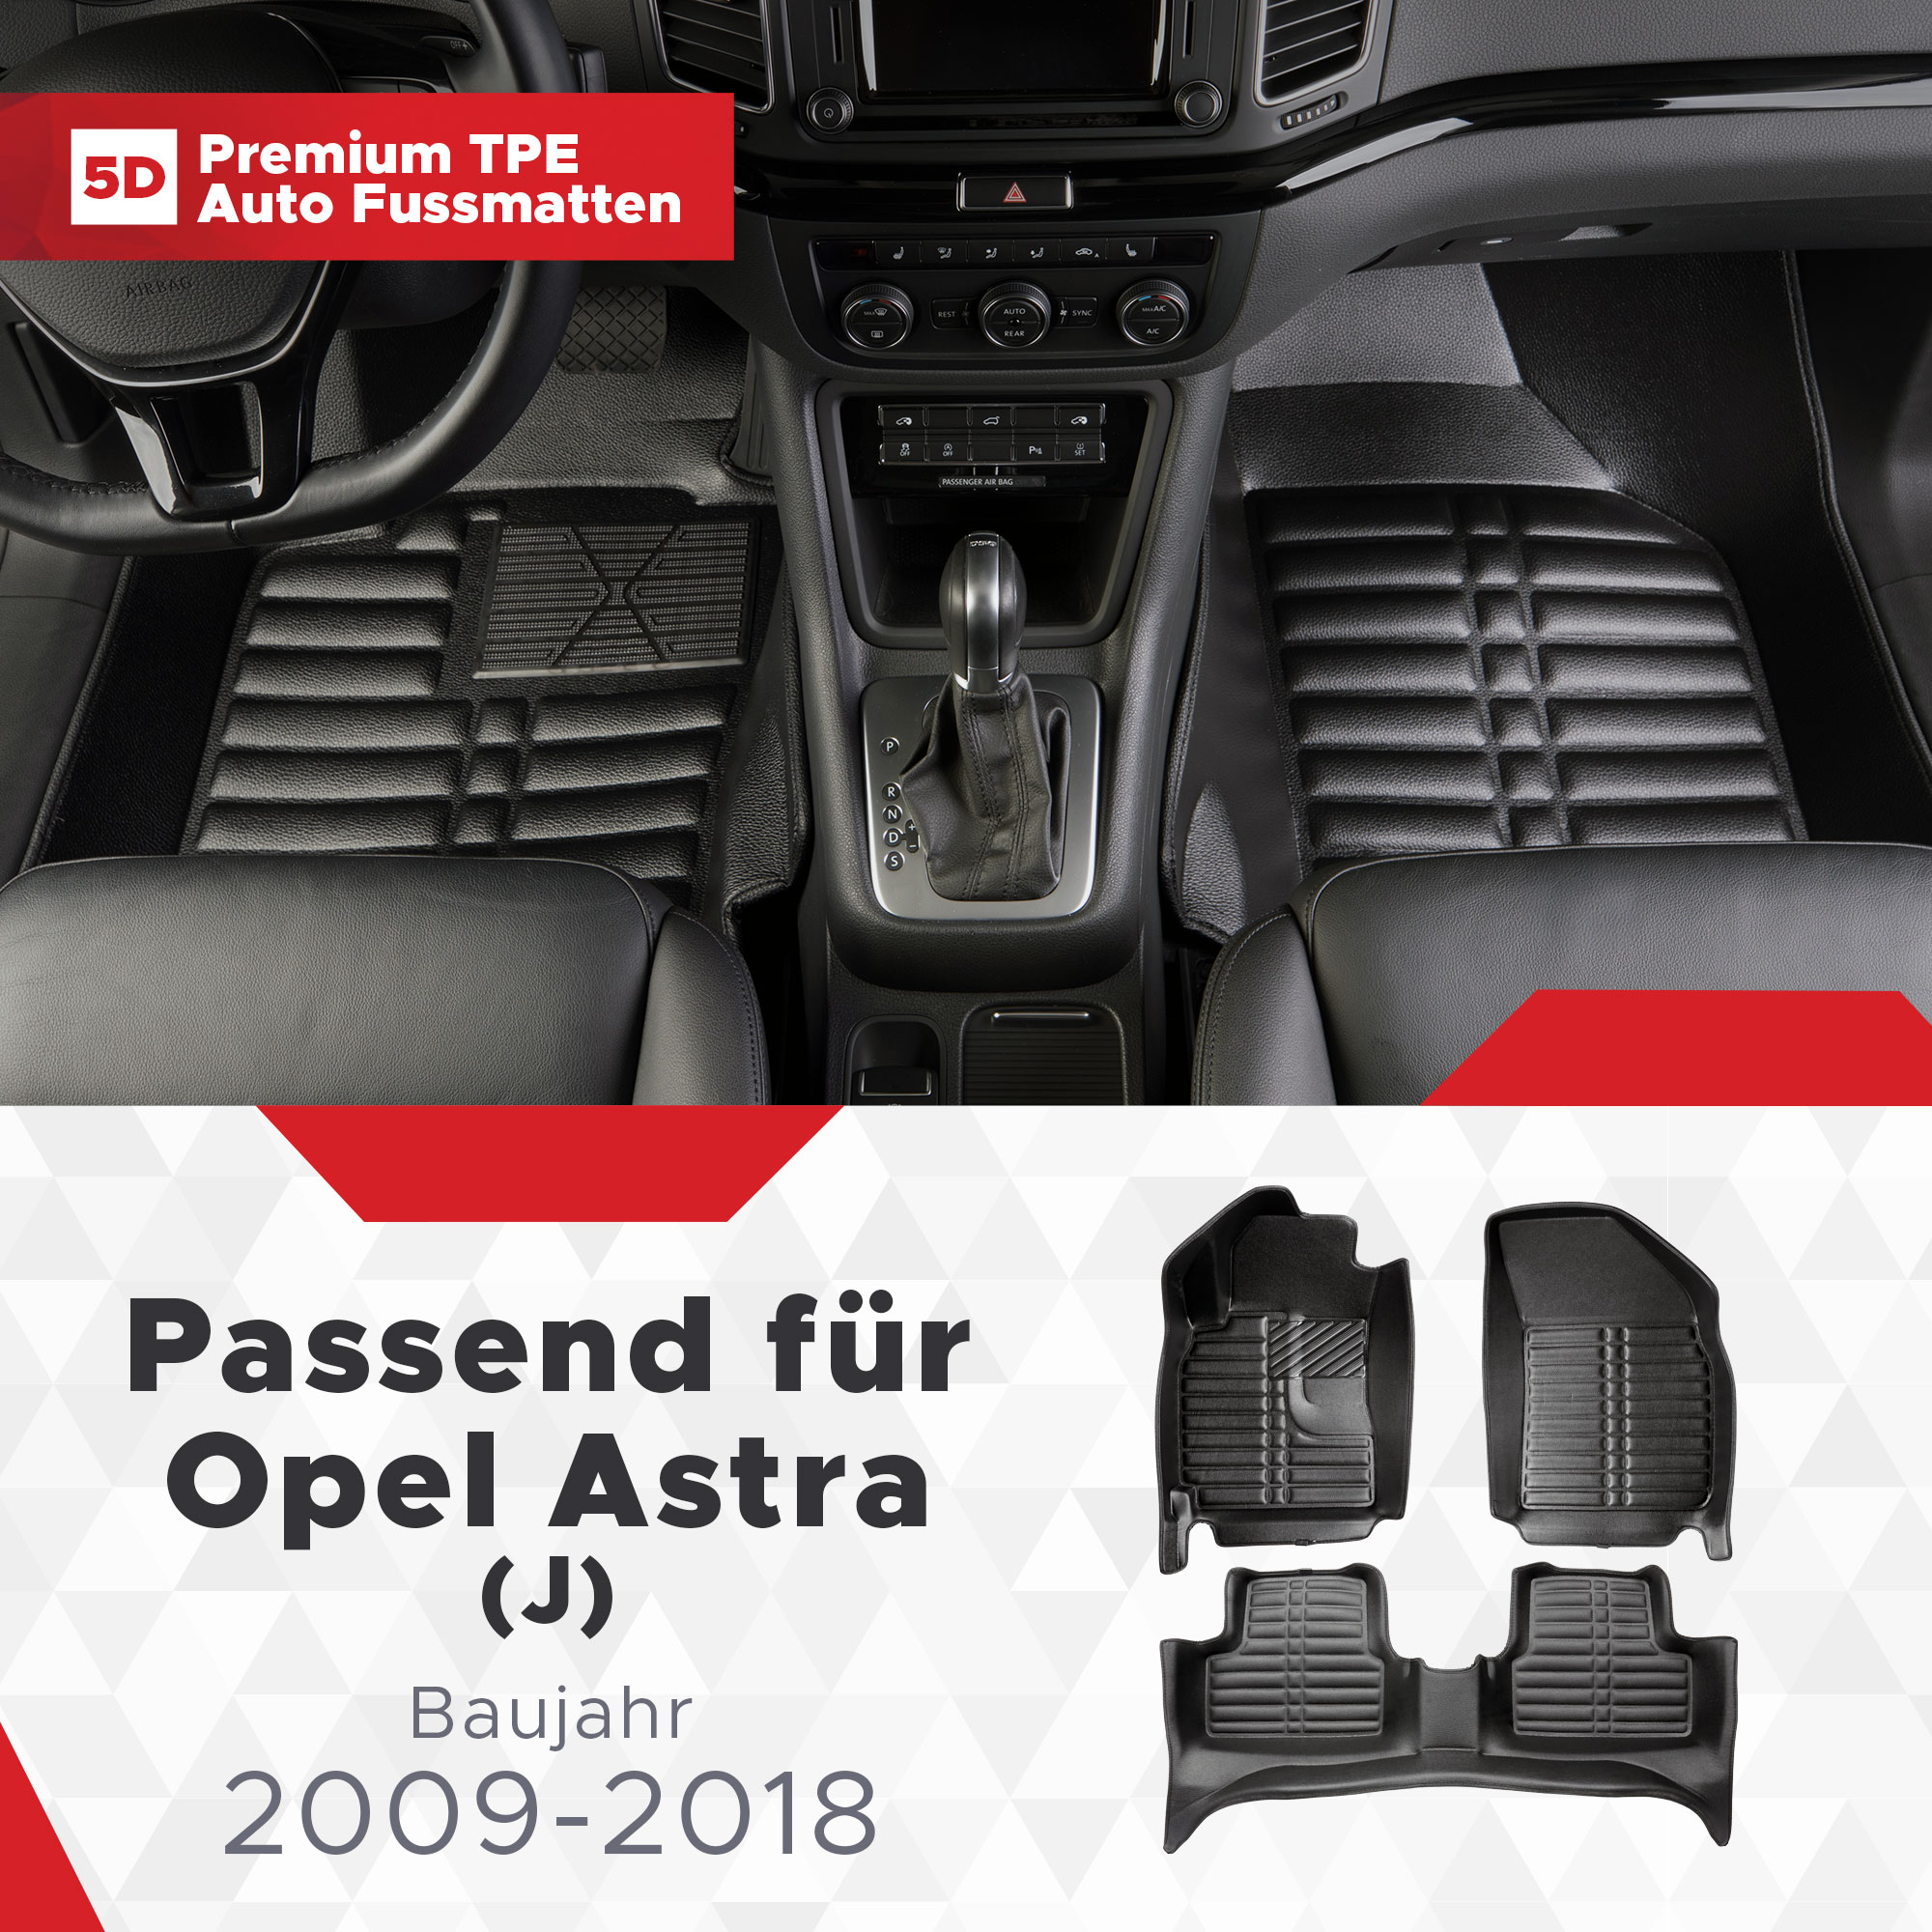 5D Opel Astra (K) Fussmatten Bj ab 2015 TPE